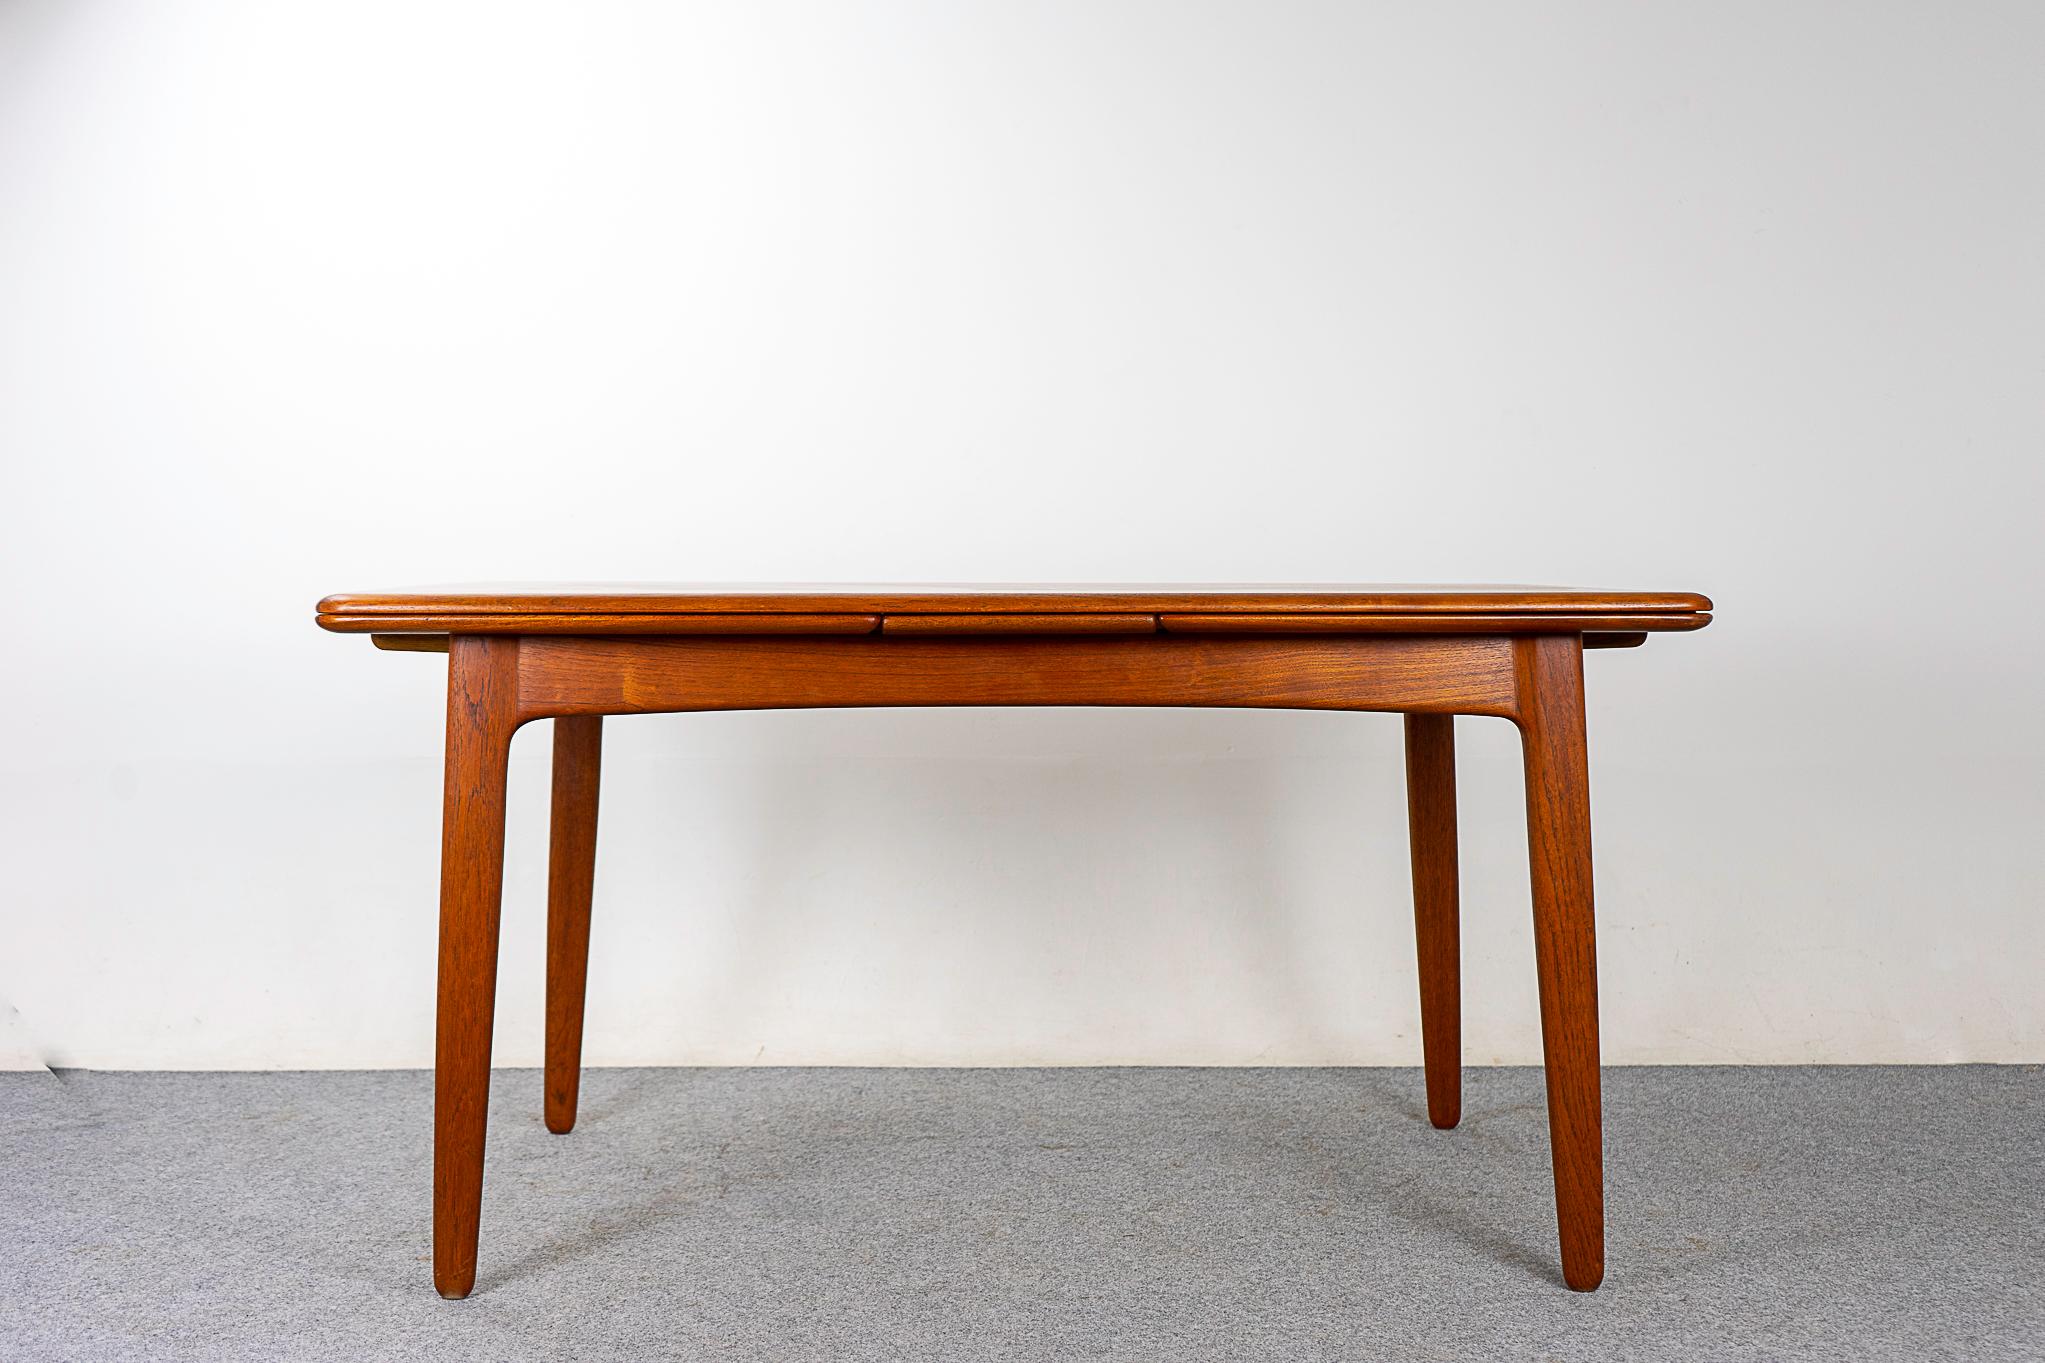 Table de salle à manger à tiroir en teck par Svend Madsen pour K.K., vers les années 1950. Un niveau de qualité et de construction vraiment exceptionnel. Teck richement grainé avec une surface supérieure assortie, des bordures massives généreuses et